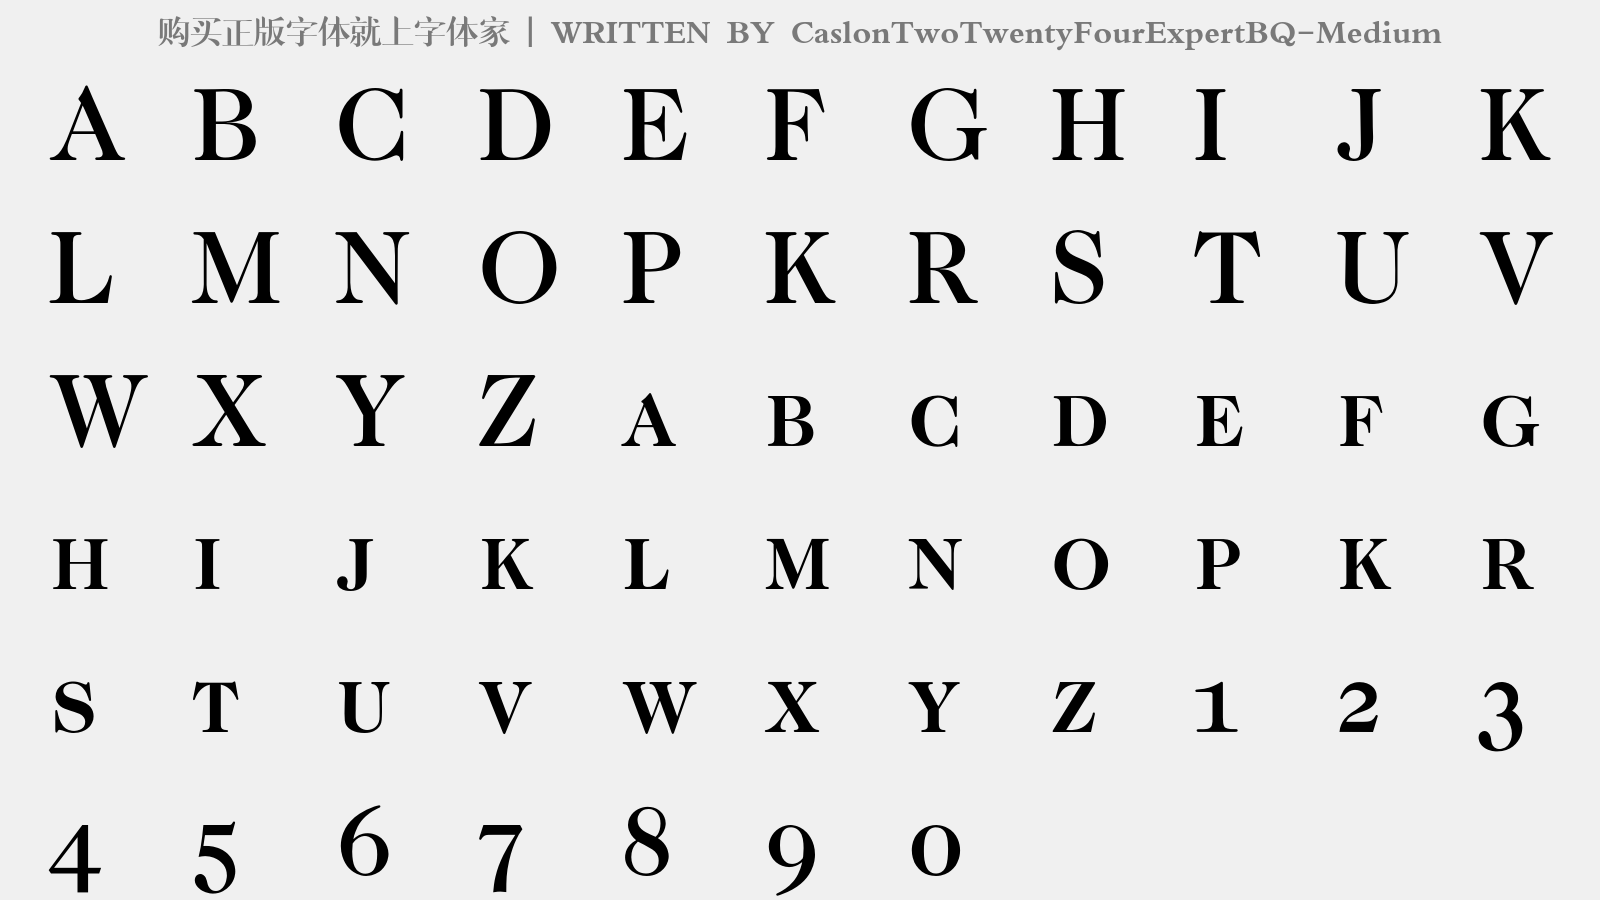 CaslonTwoTwentyFourExpertBQ-Medium - 大写字母/小写字母/数字